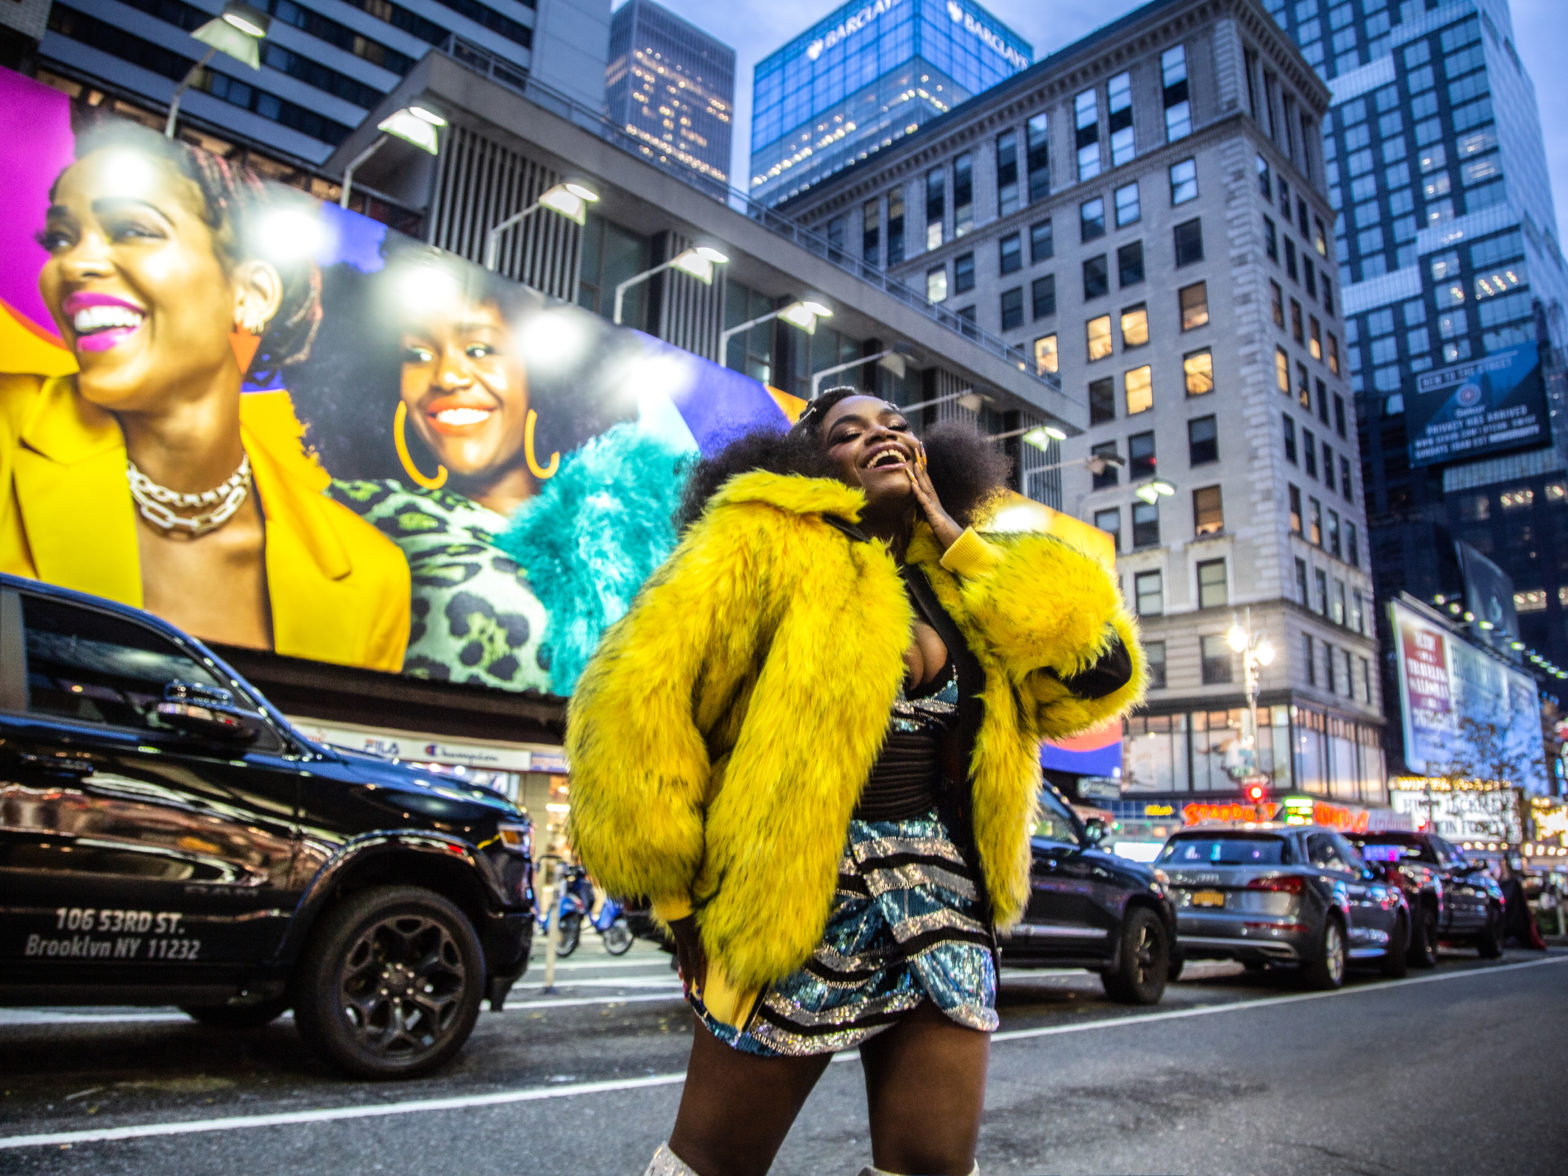 Shoniqua Shandai From The Show 'Harlem' Shares Her Favorite Destinations & More